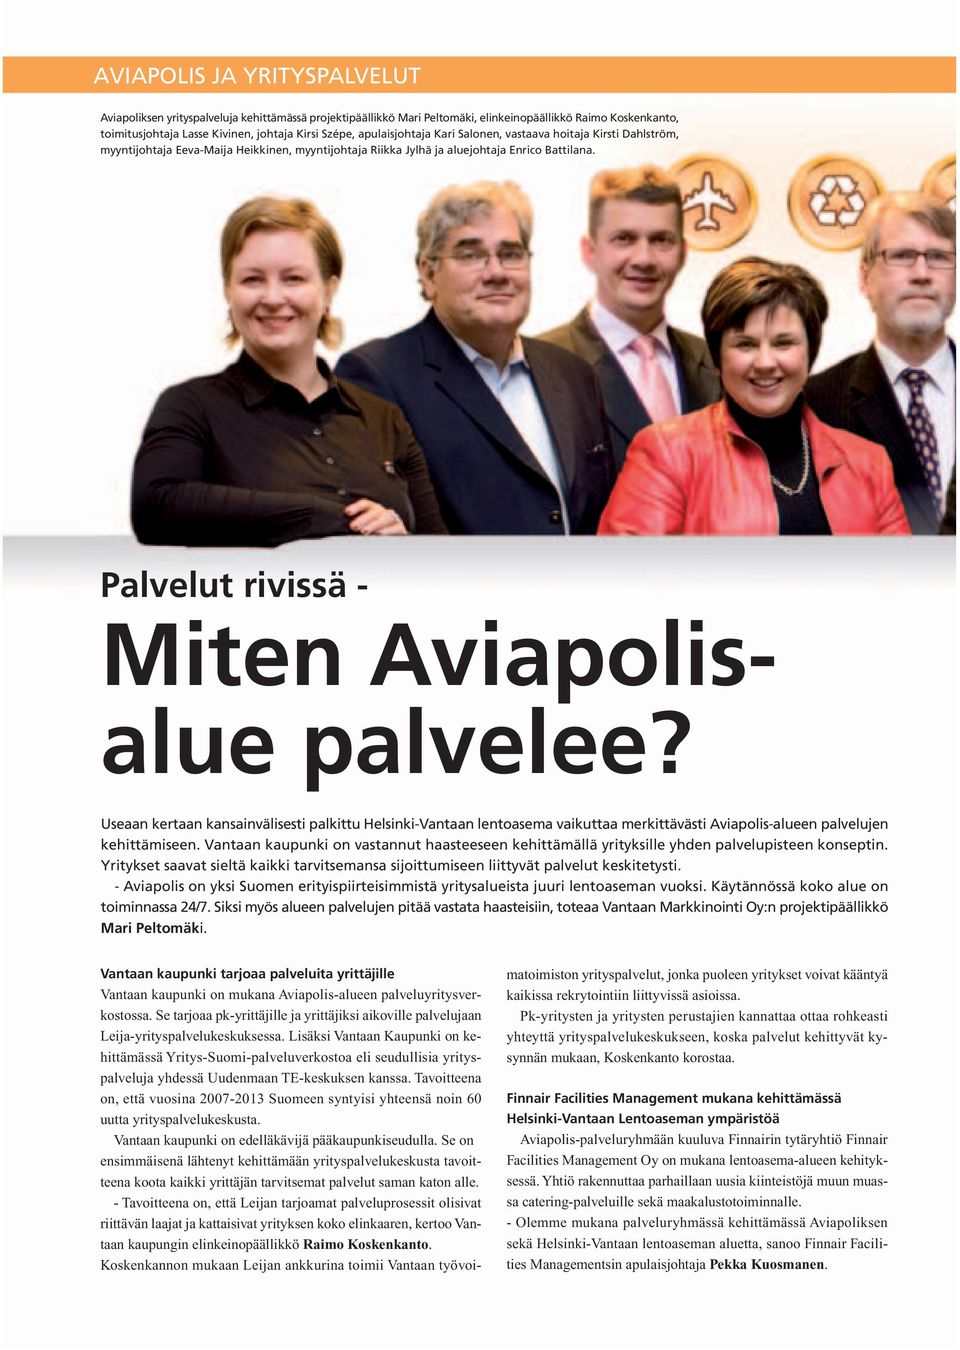 Palvelut rivissä - Miten Aviapolisalue palvelee? Useaan kertaan kansainvälisesti palkittu Helsinki-Vantaan lentoasema vaikuttaa merkittävästi Aviapolis-alueen palvelujen kehittämiseen.